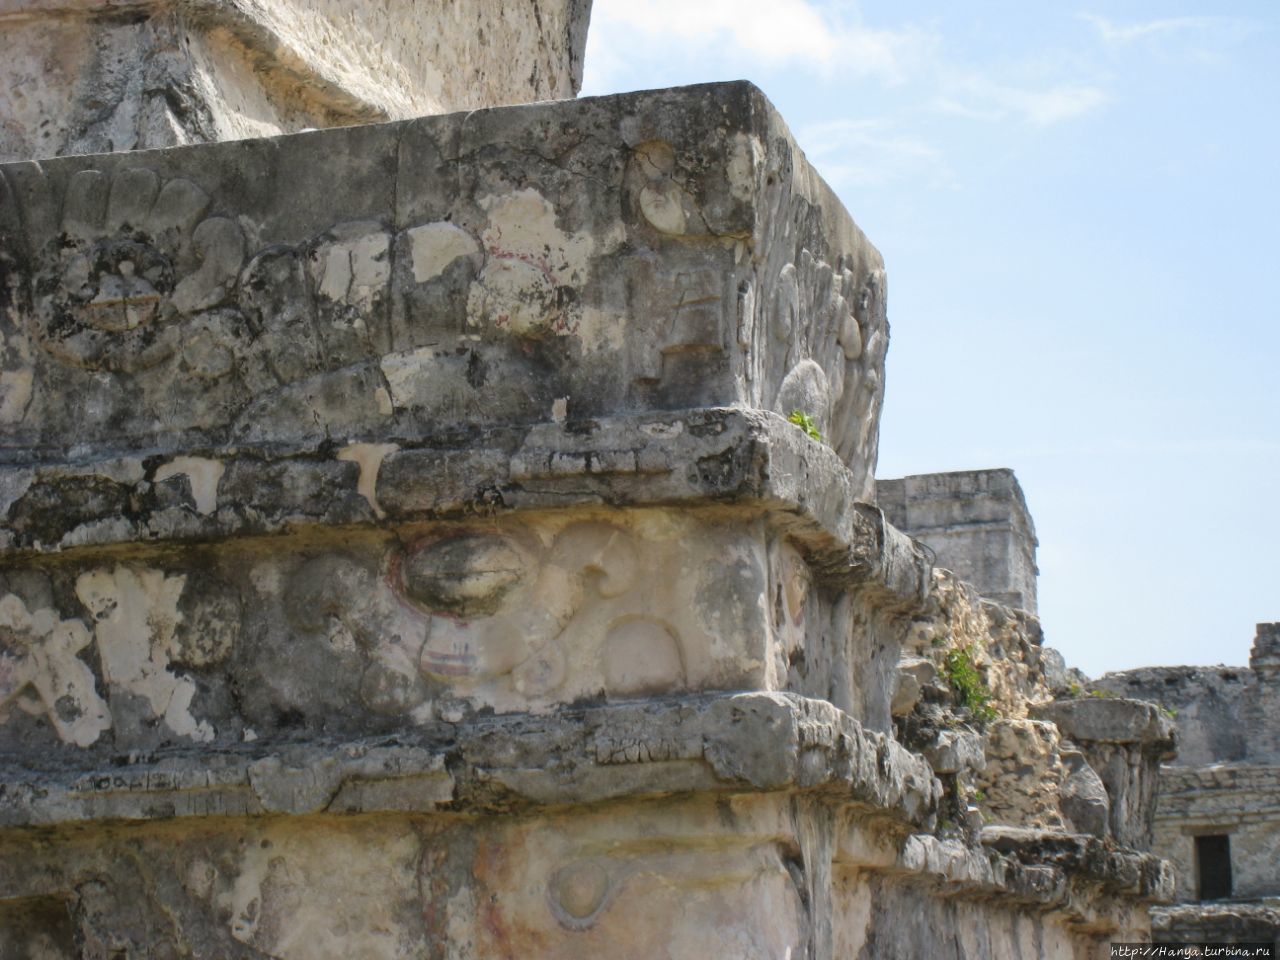 Экскурсия в древний город Тулум из Канкуна. Ч.155